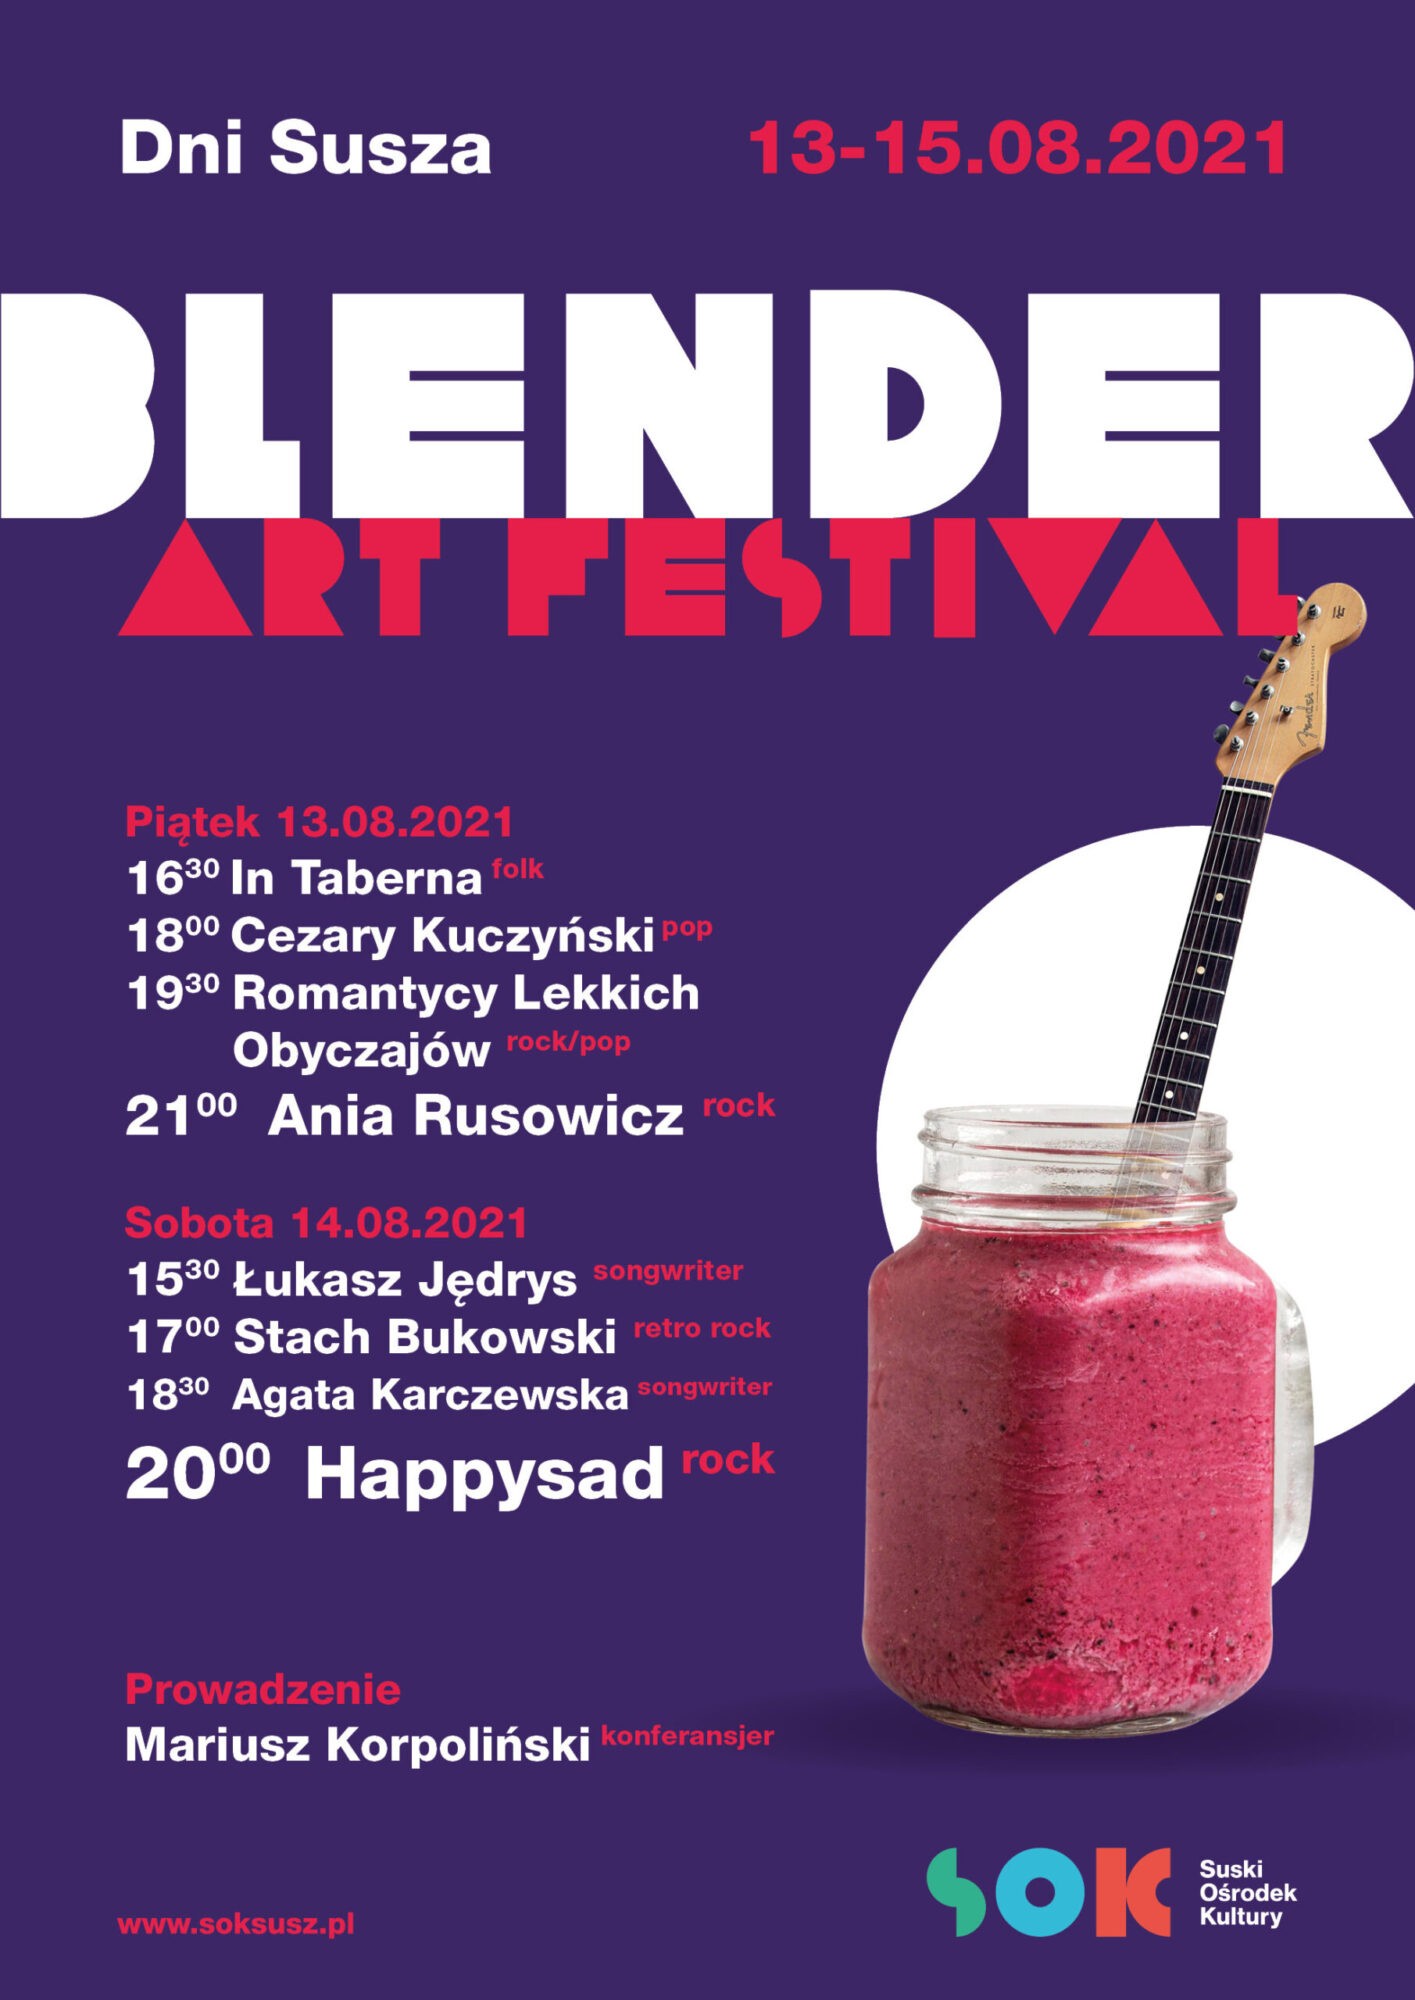 Blender Art Festival 13-15.08.2021 / DNI SUSZA